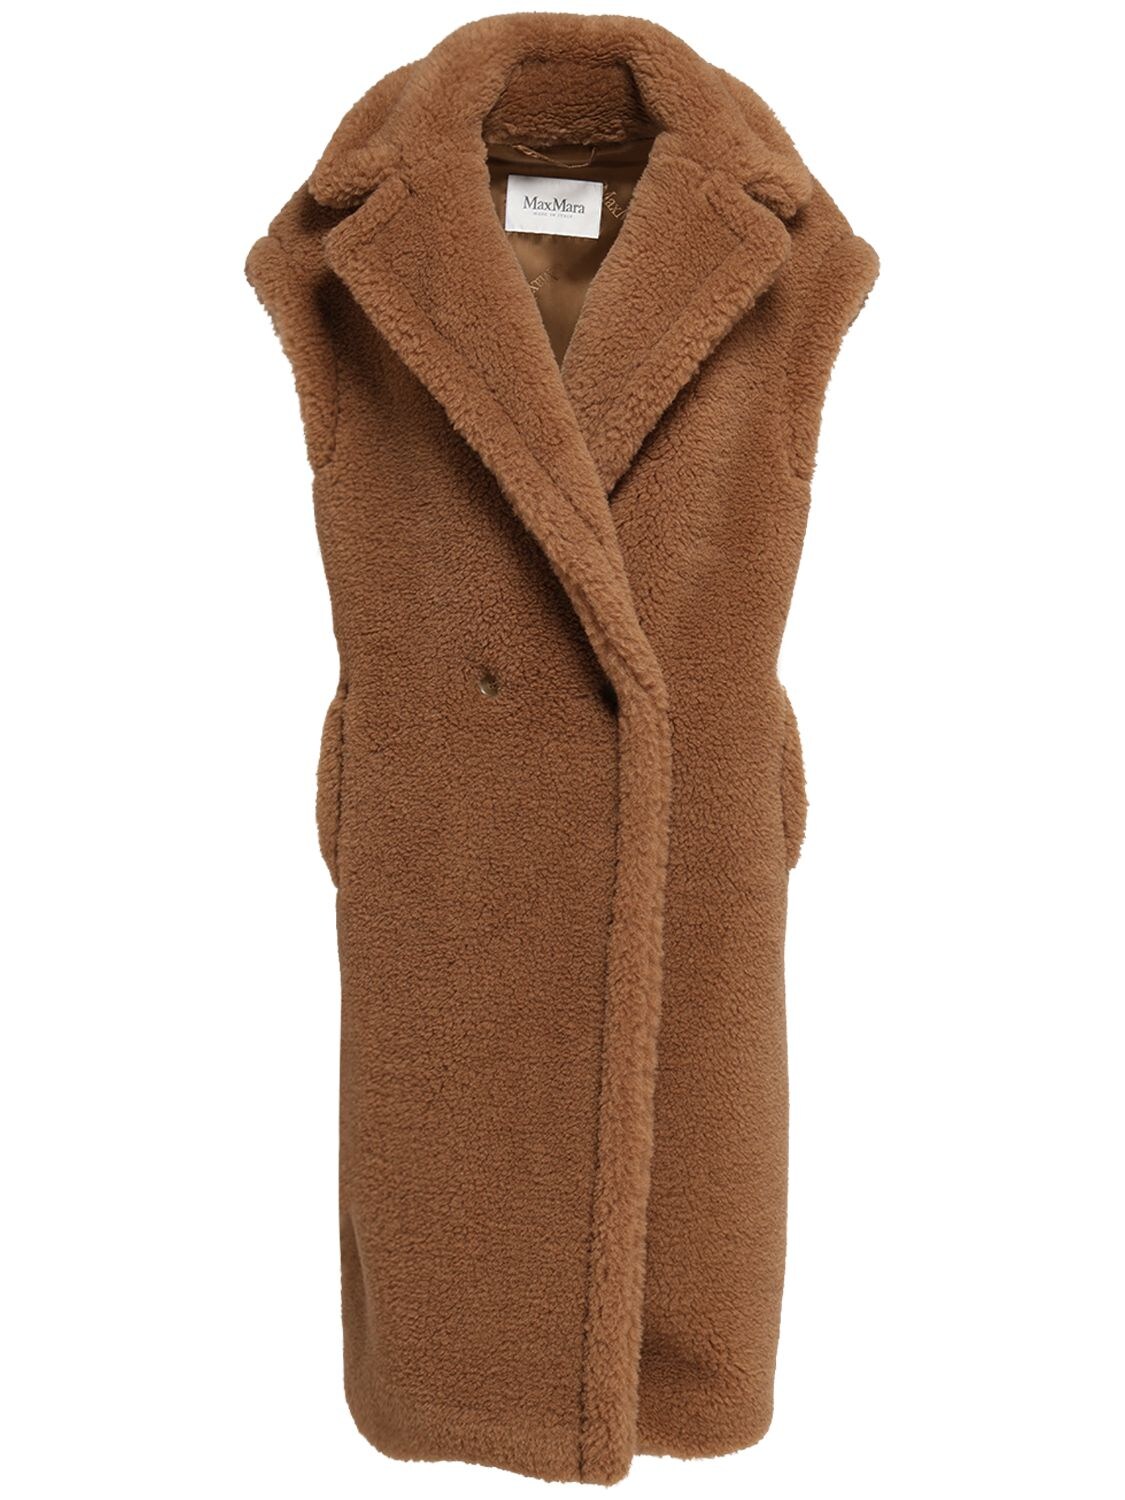 Max Mara Camel & Silk Long Vest Coat